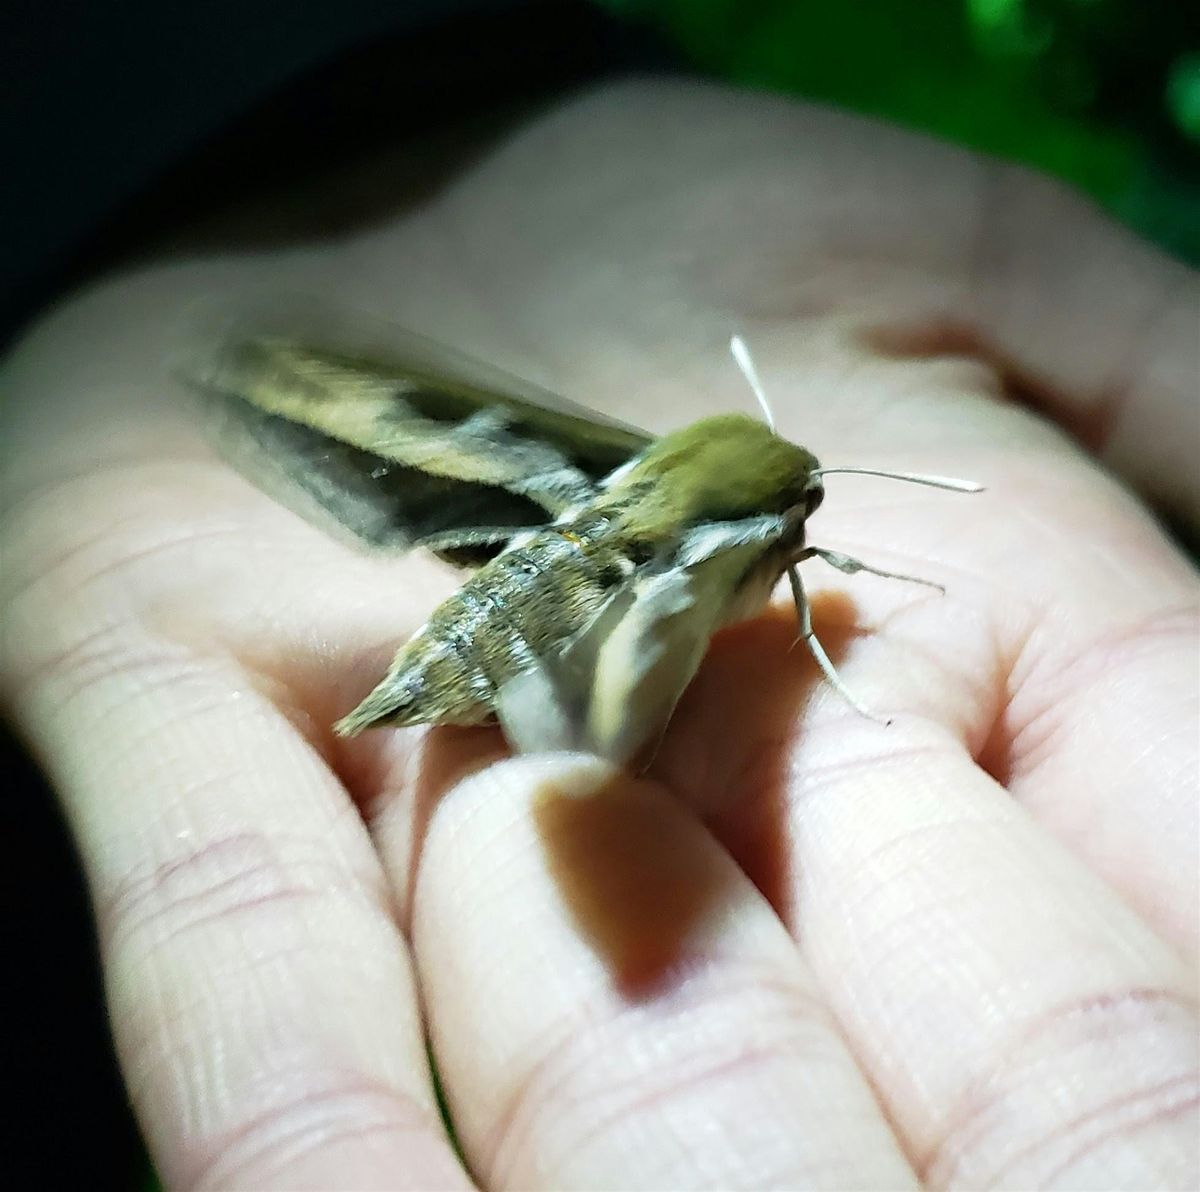 Flight By Night: Moth-lighting in the Weaselhead